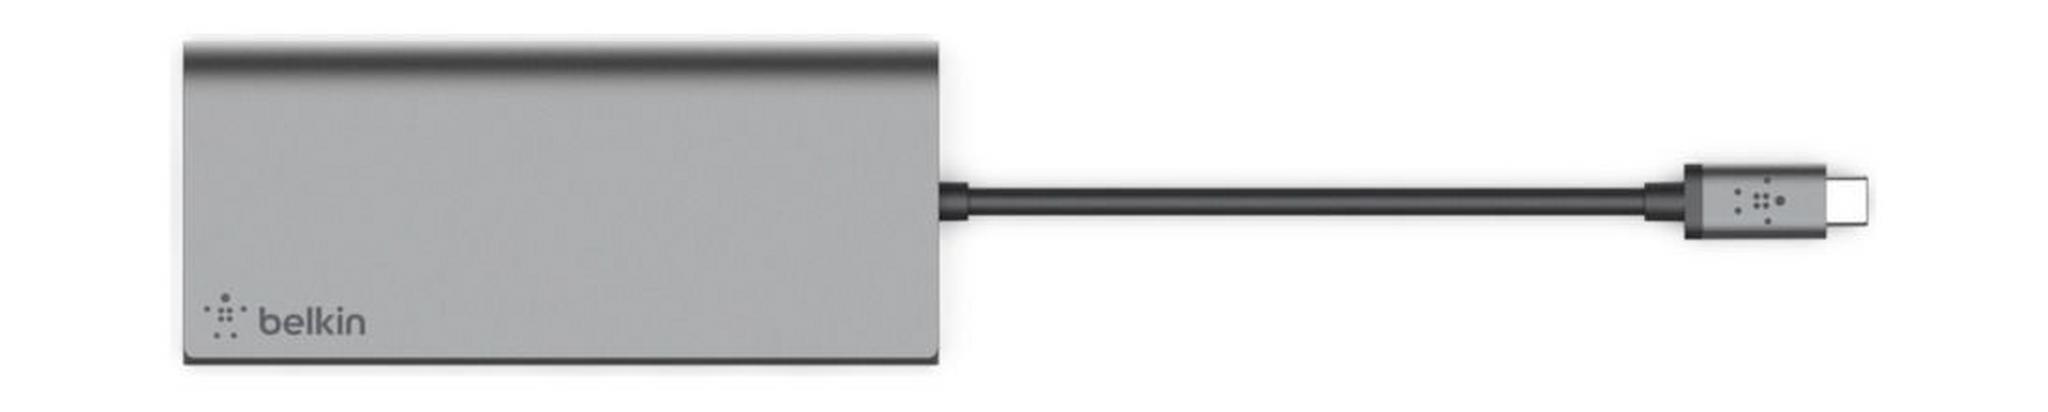 Belkin USB-C 5-in-1 Multimedia Hub